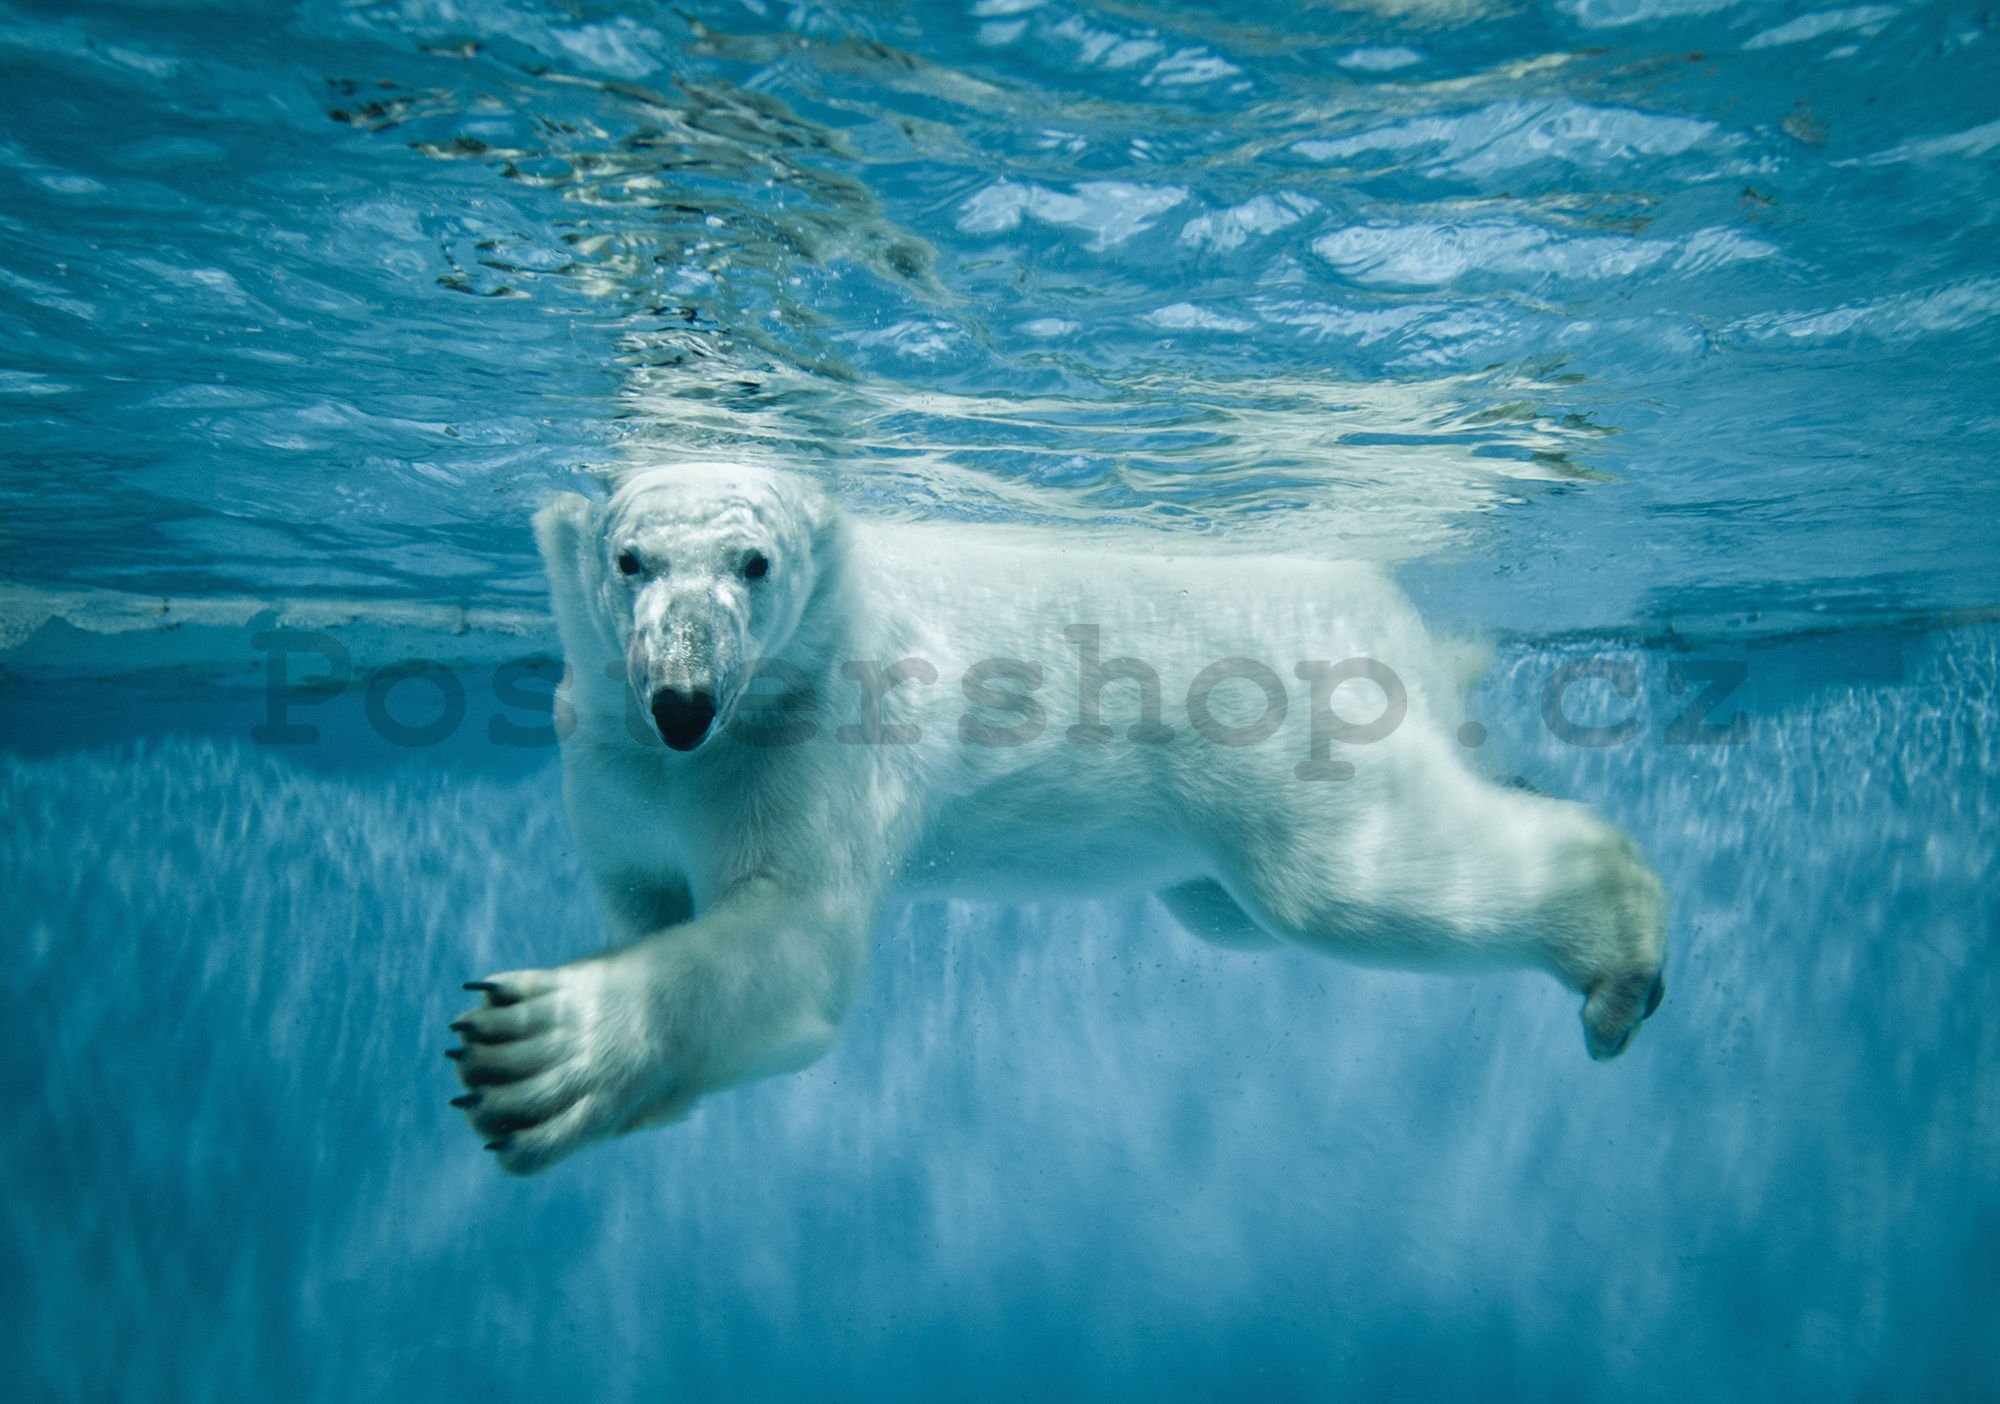 Fototapeta vliesová: Lední medvěd (1) - 184x254 cm